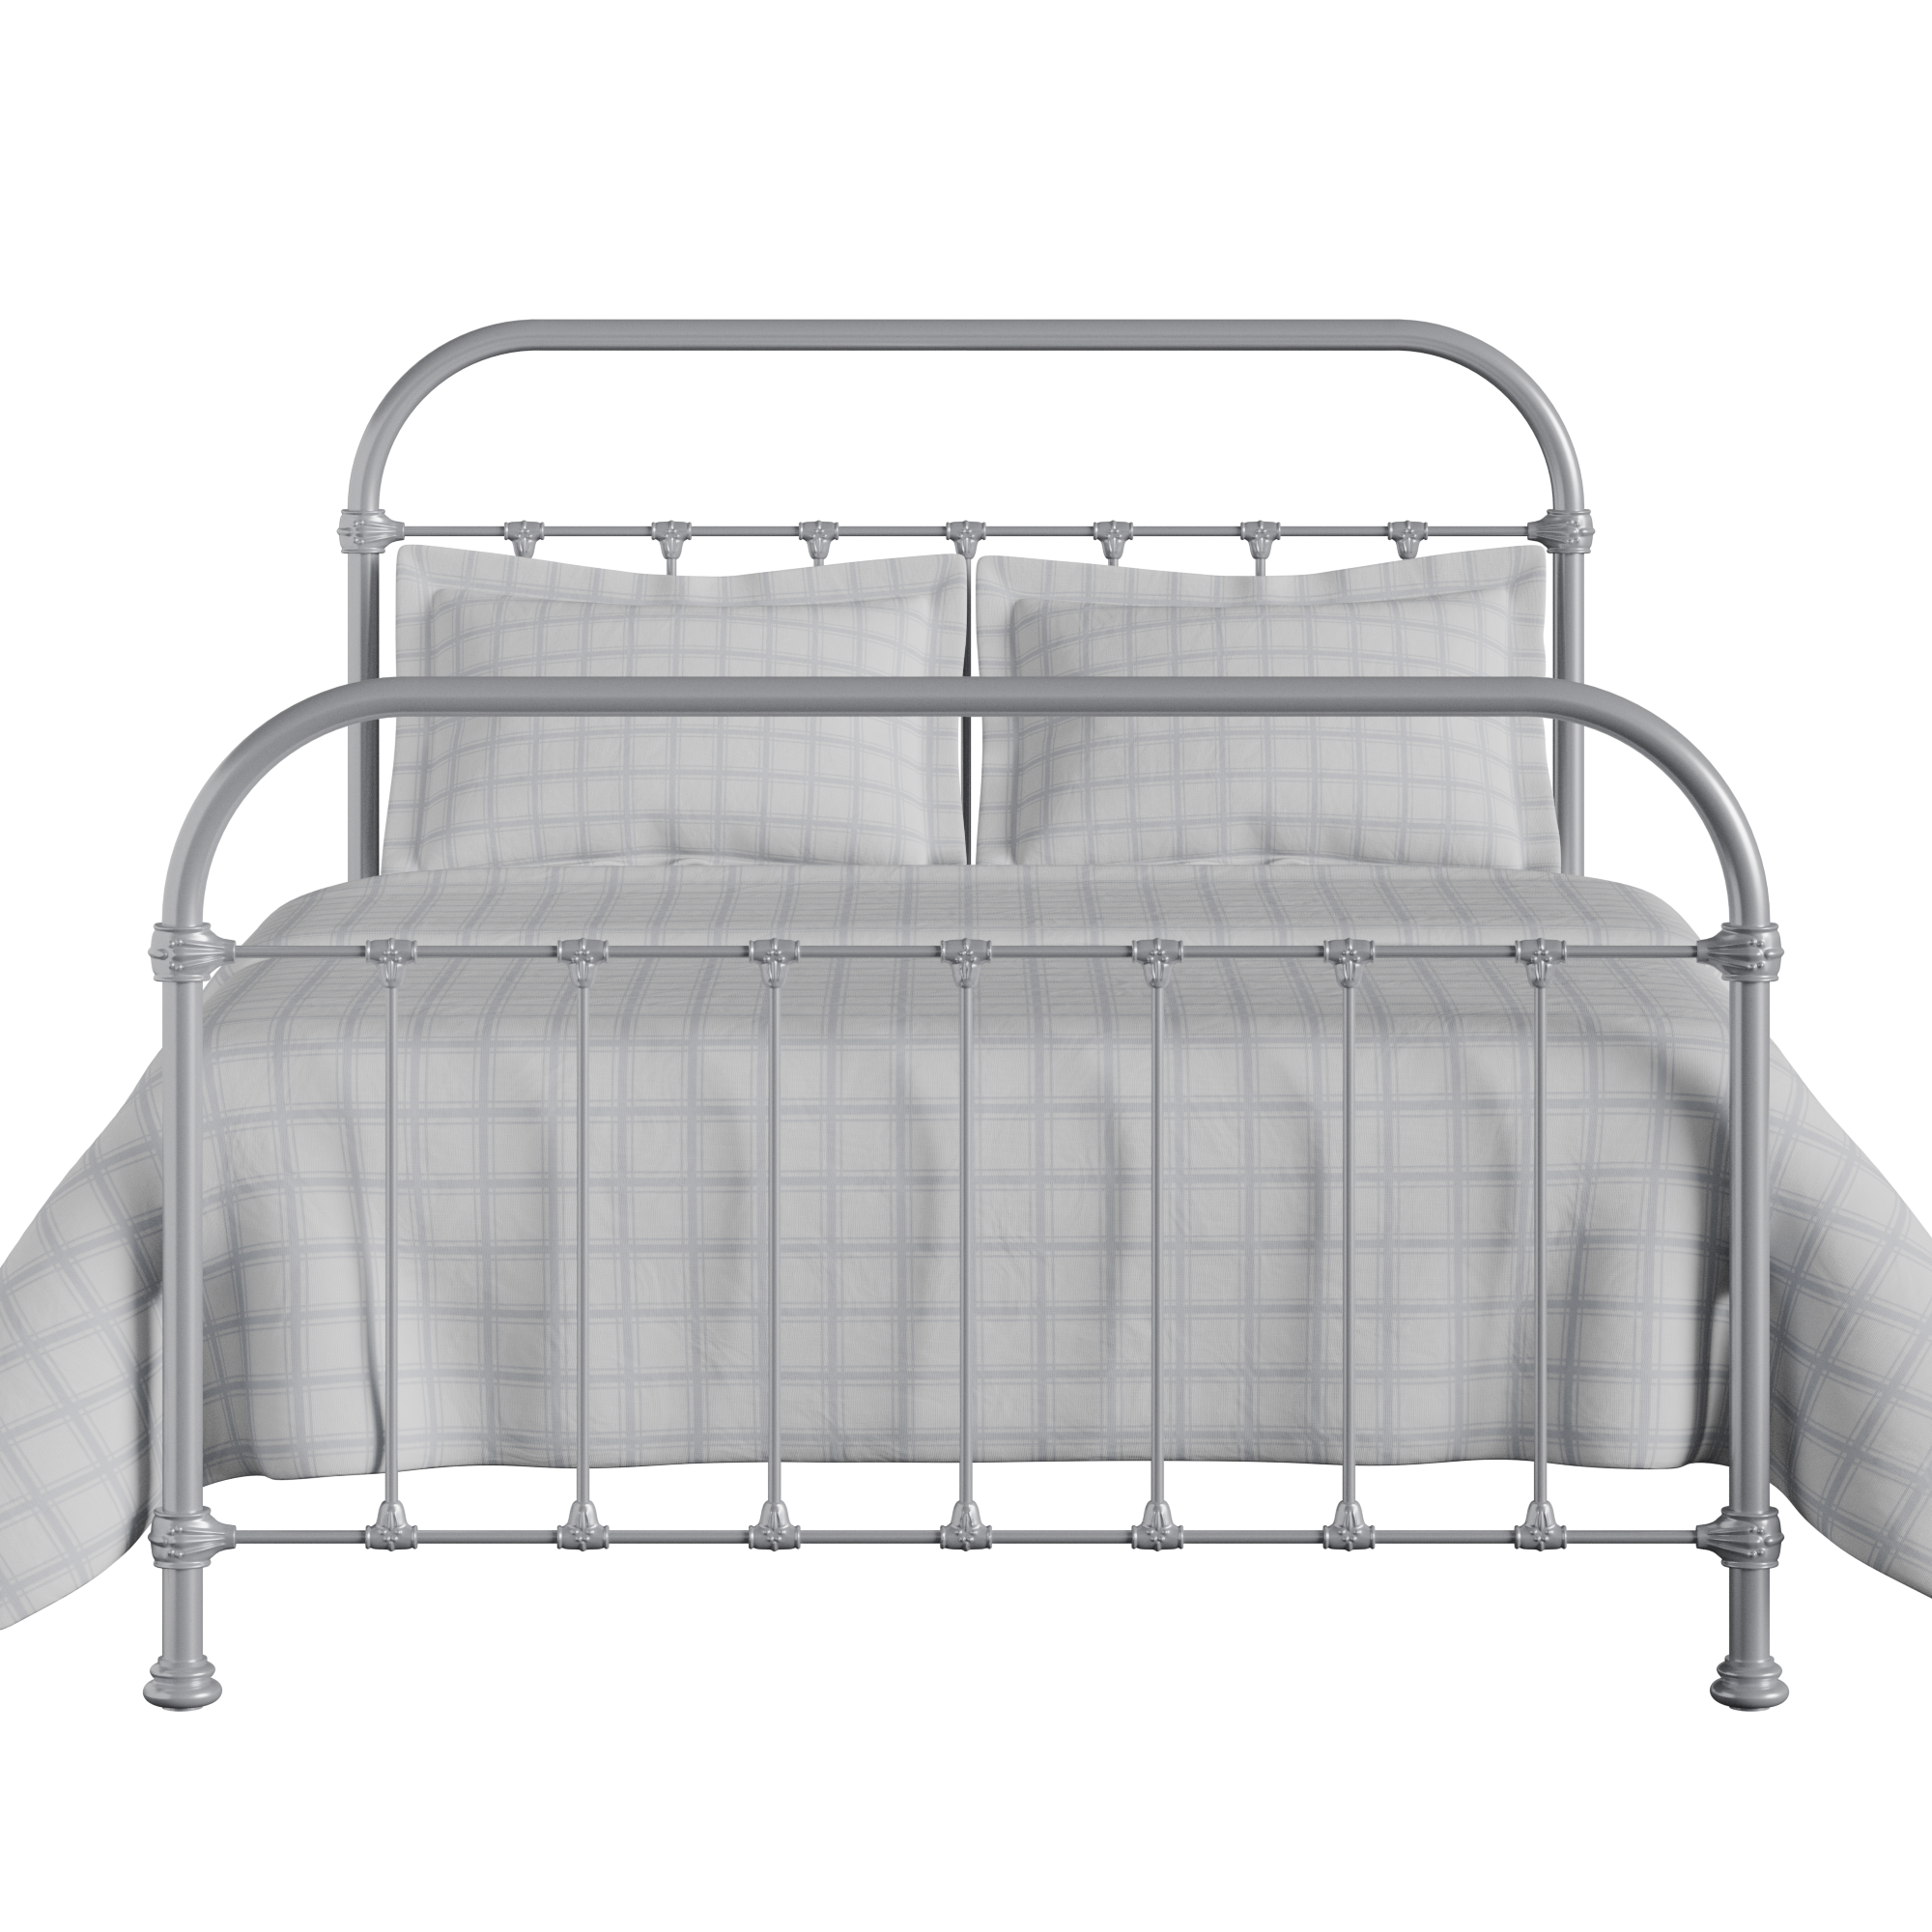 Timolin iron/metal bed in silver